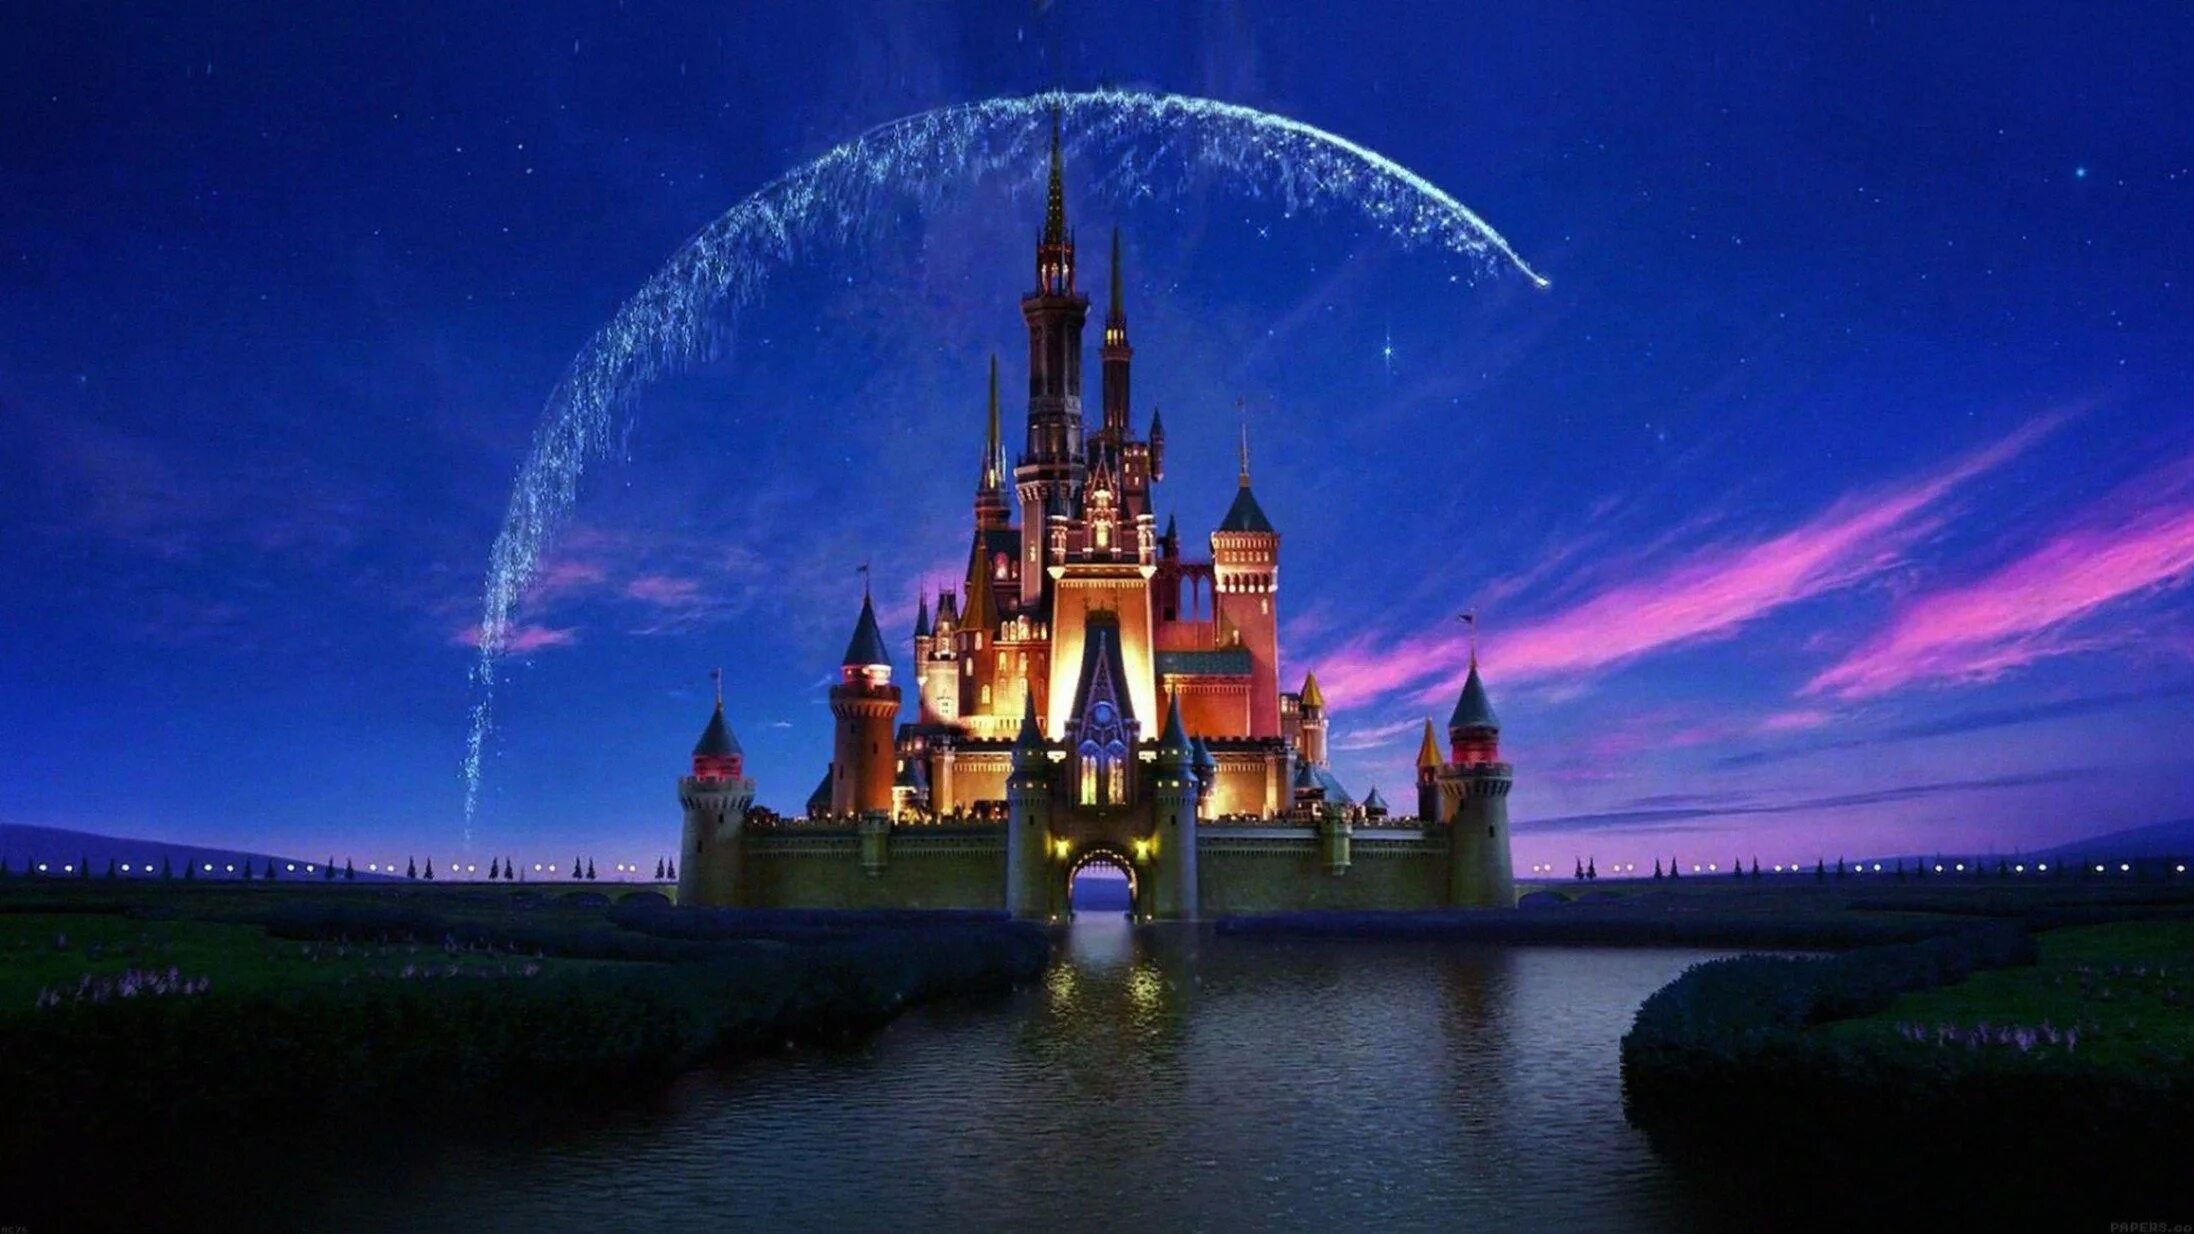 Уолт Дисней Пикчерз наоборот замок. Киностудия Walt Disney. Студия Уолта Диснея. Заставка Уолт Дисней замок. Пикчерз оф